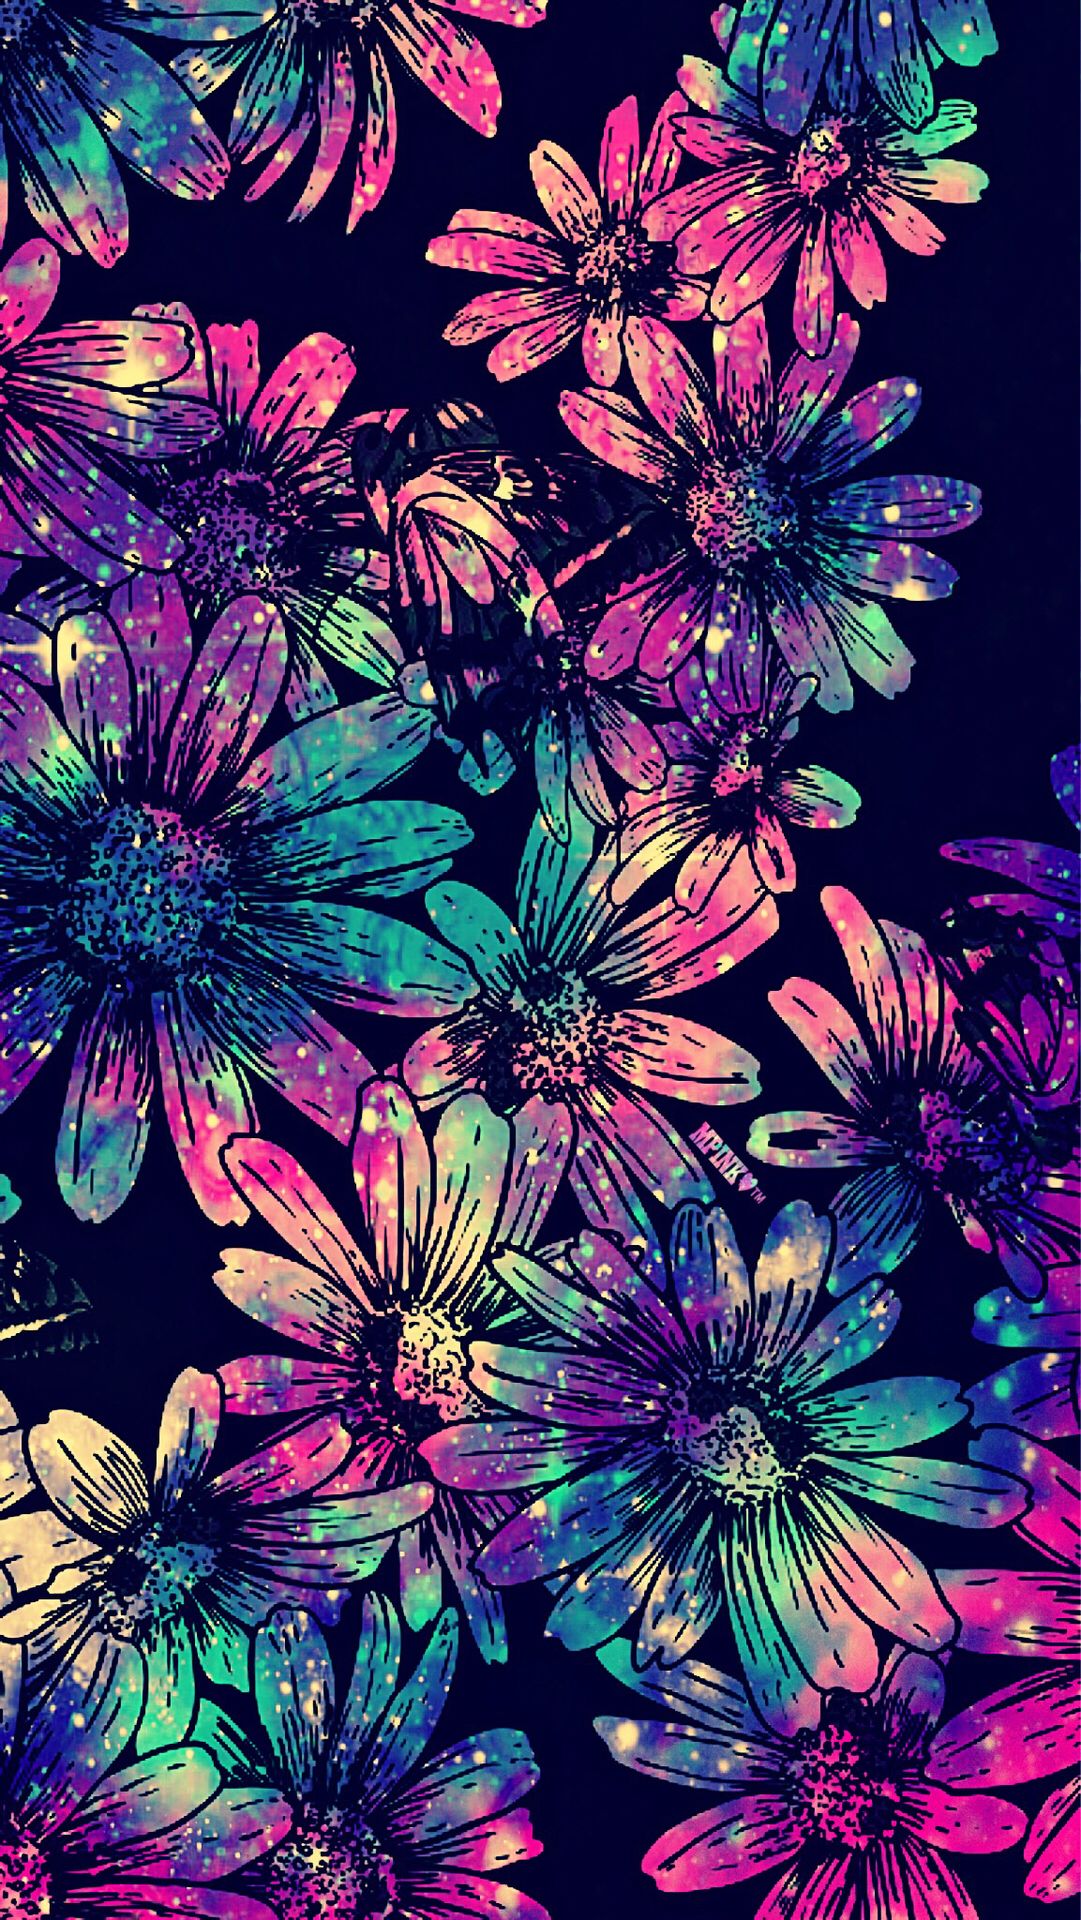 Blue Flowers Galaxy Wallpaper #androidwallpaper #iphonewallpaper #wallpaper #galaxy #sparkle #glitter #loc. Galaxy wallpaper, Flower wallpaper, Colorful wallpaper